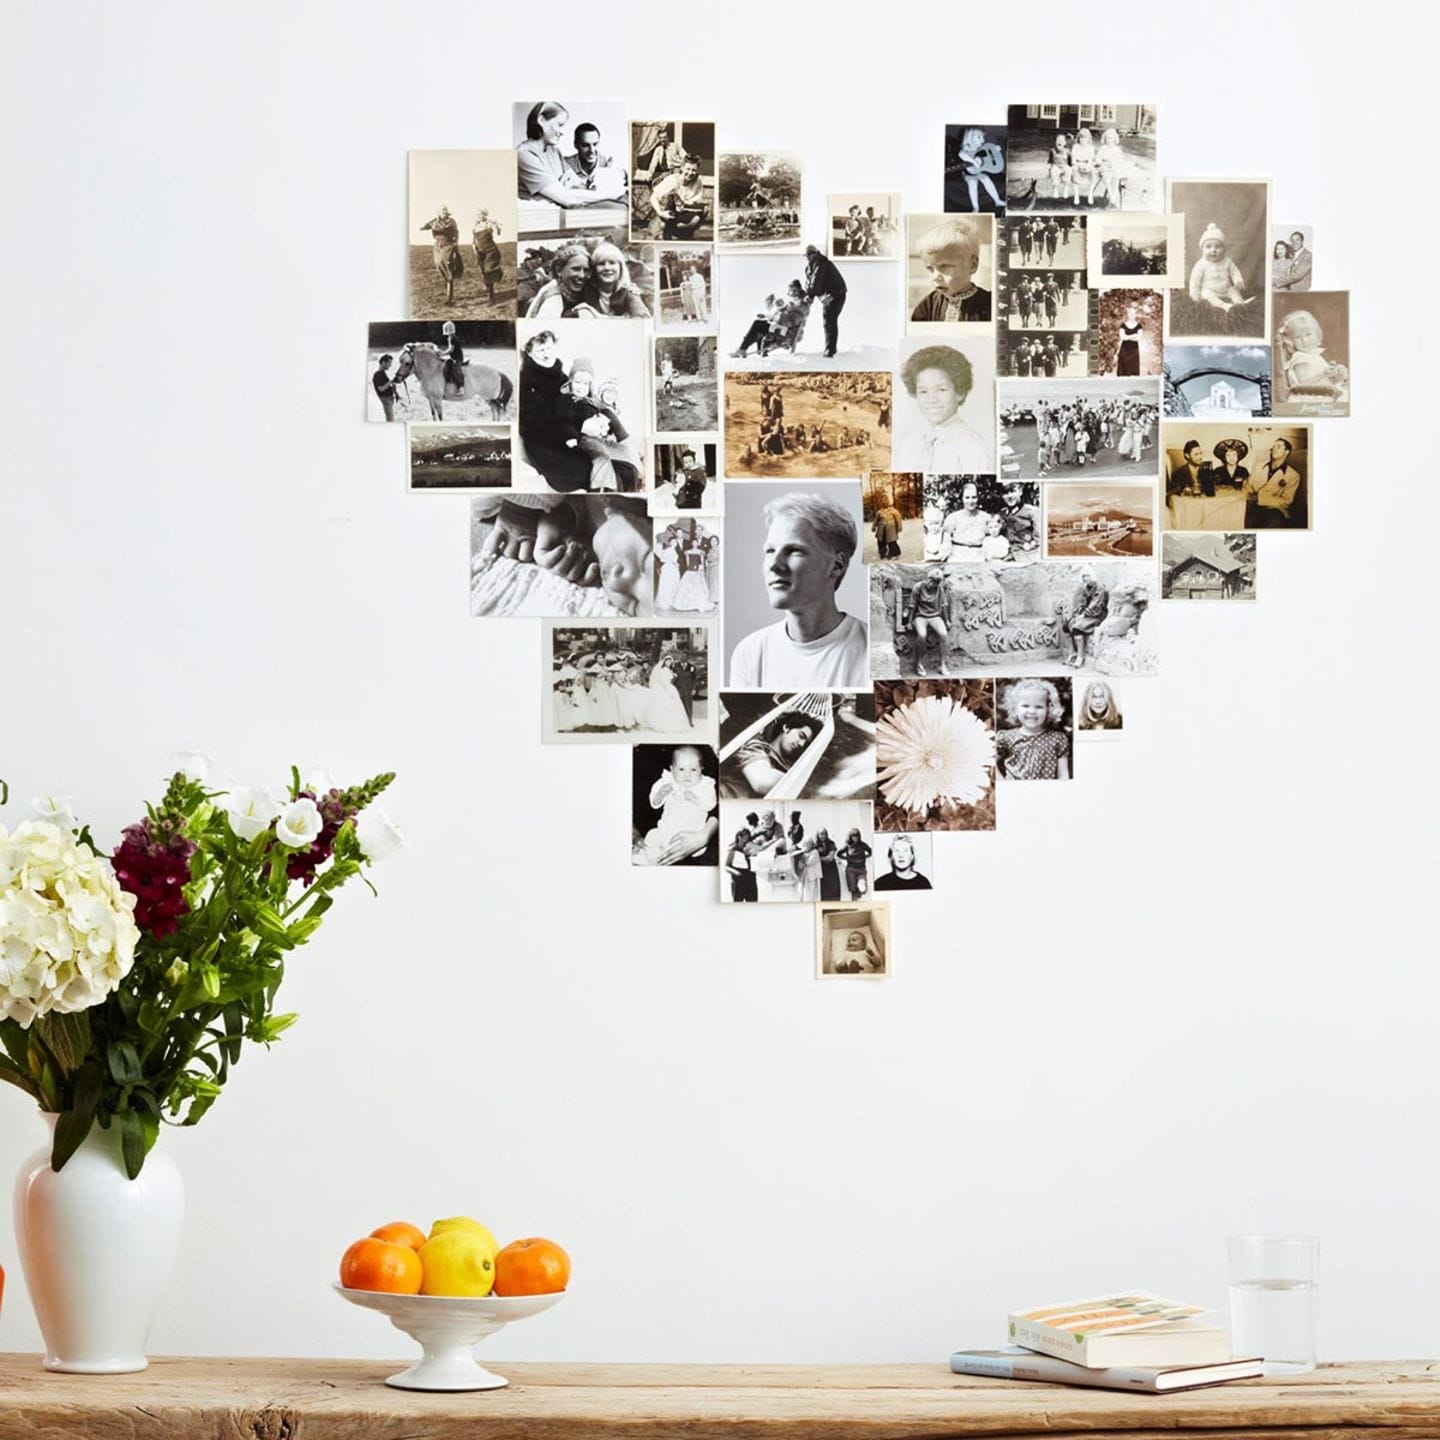 Viele Fotos ergeben an der Wand ein großes Herz